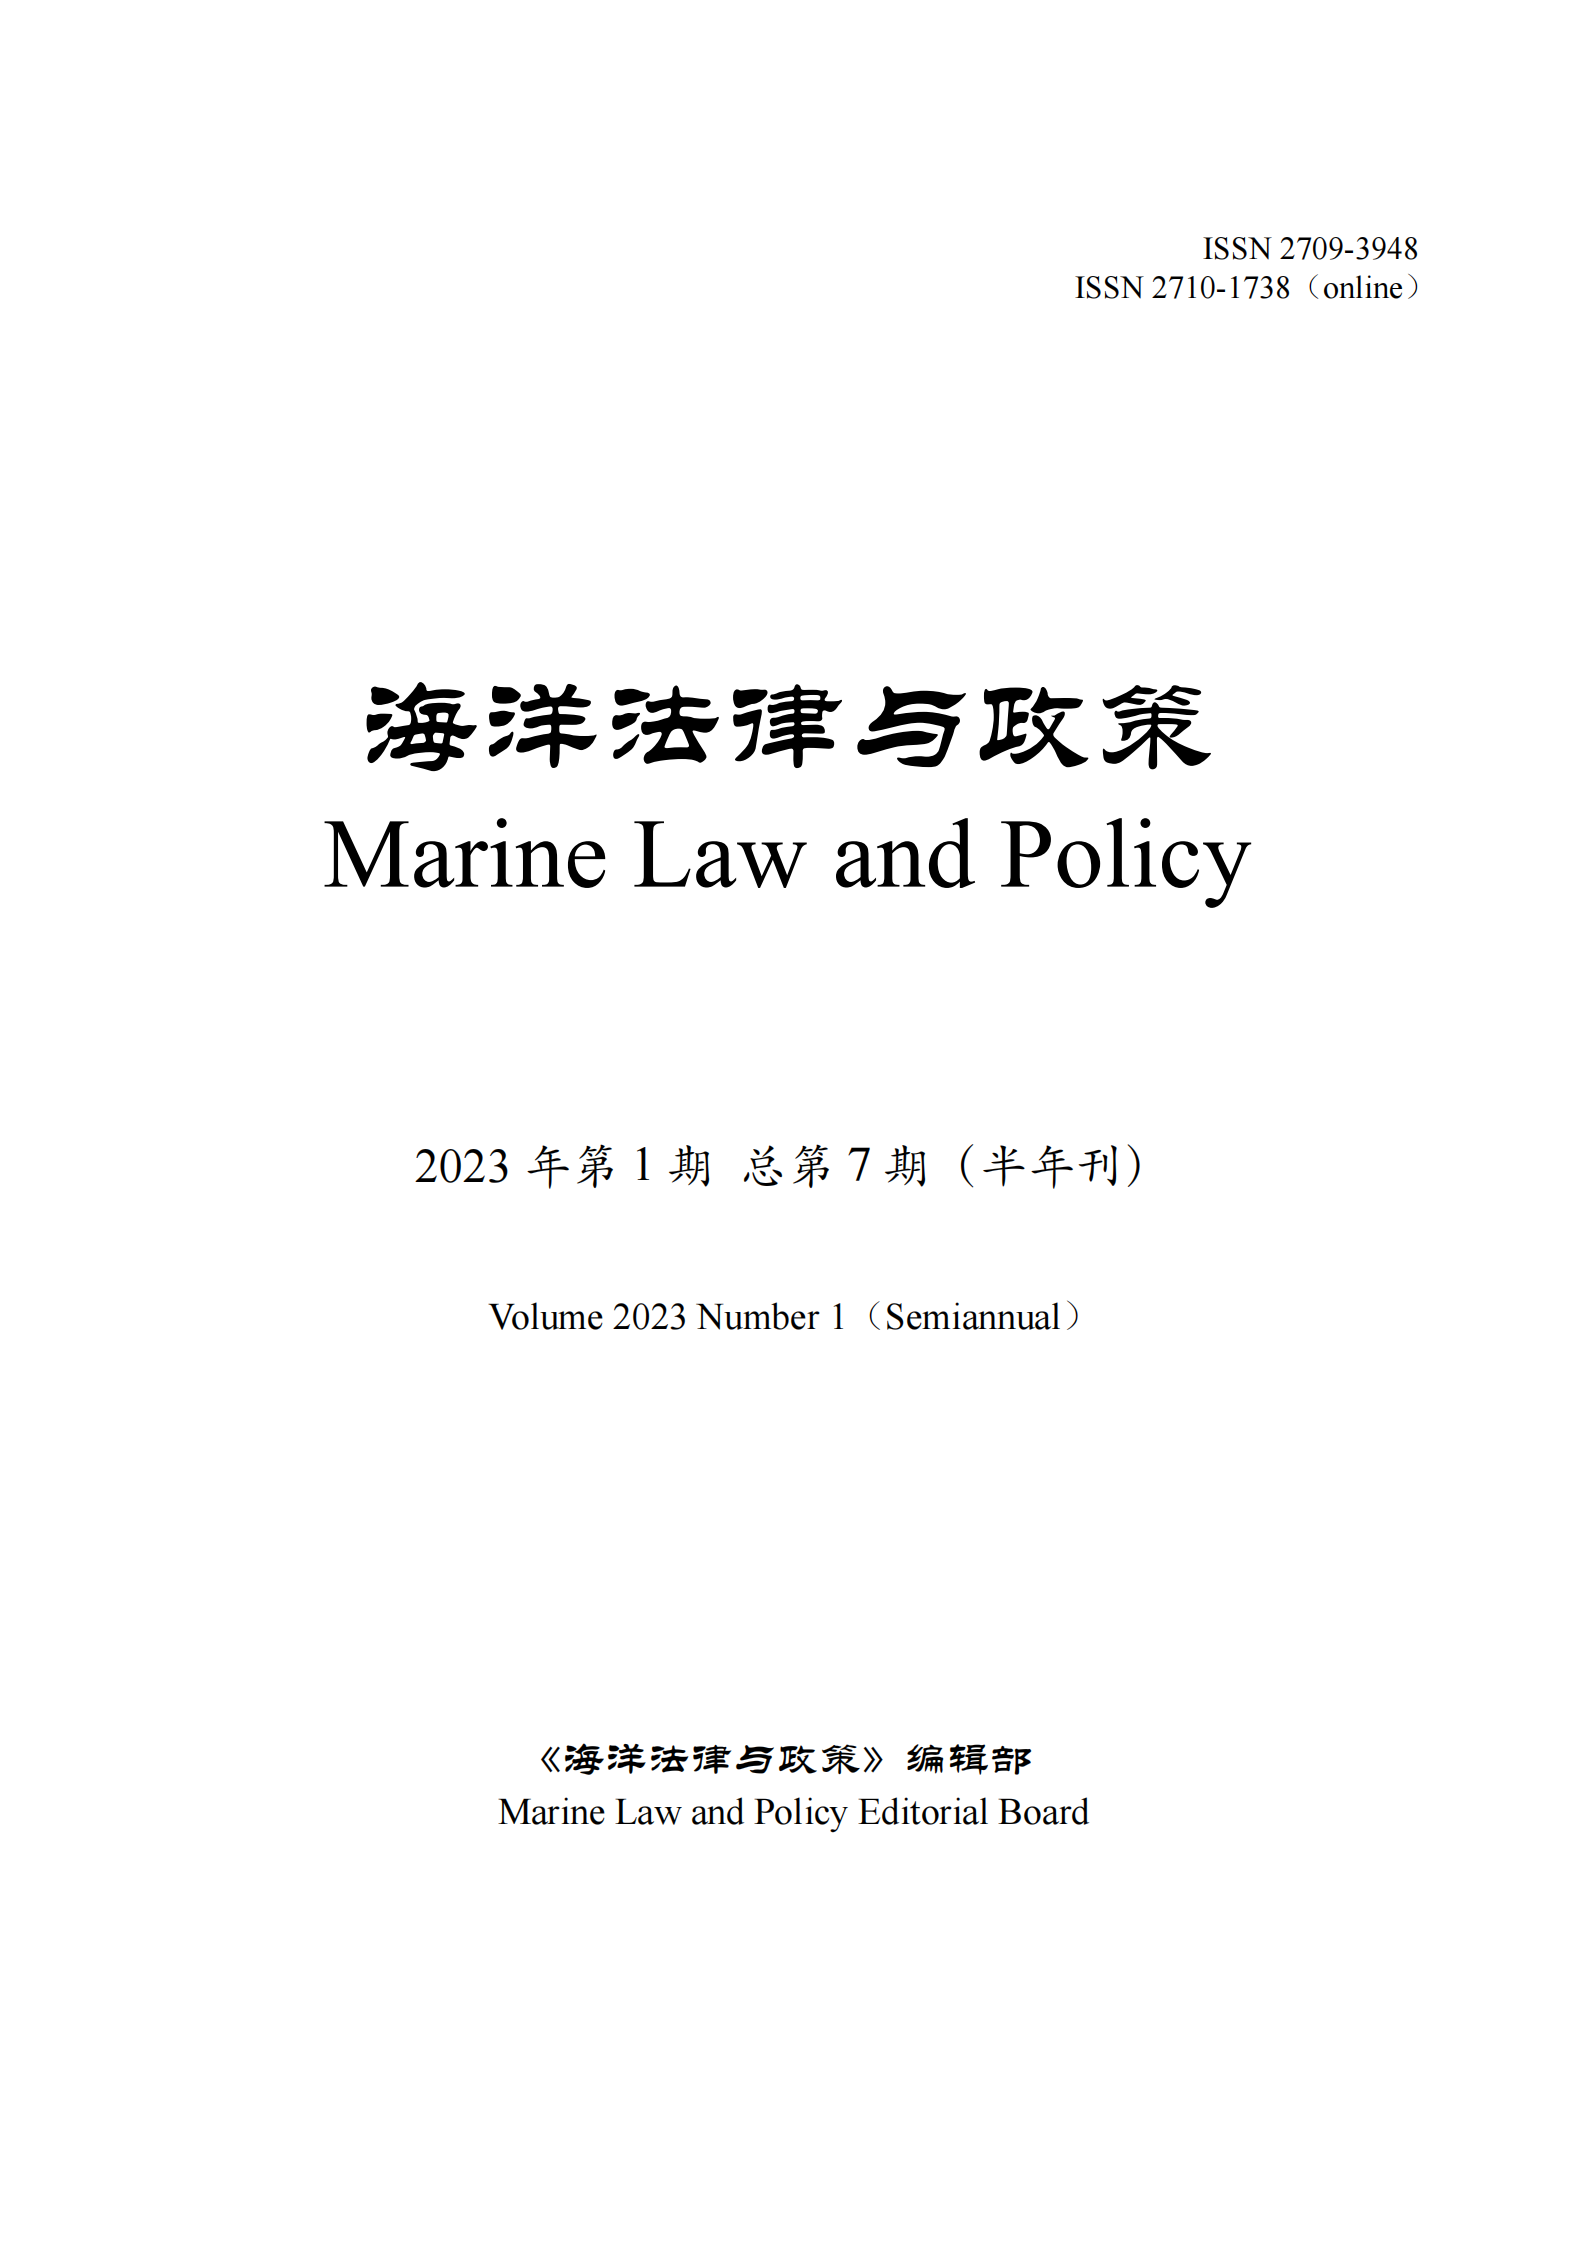 提取自《海洋法律与政策》2023年第1期+总第7期+final.png